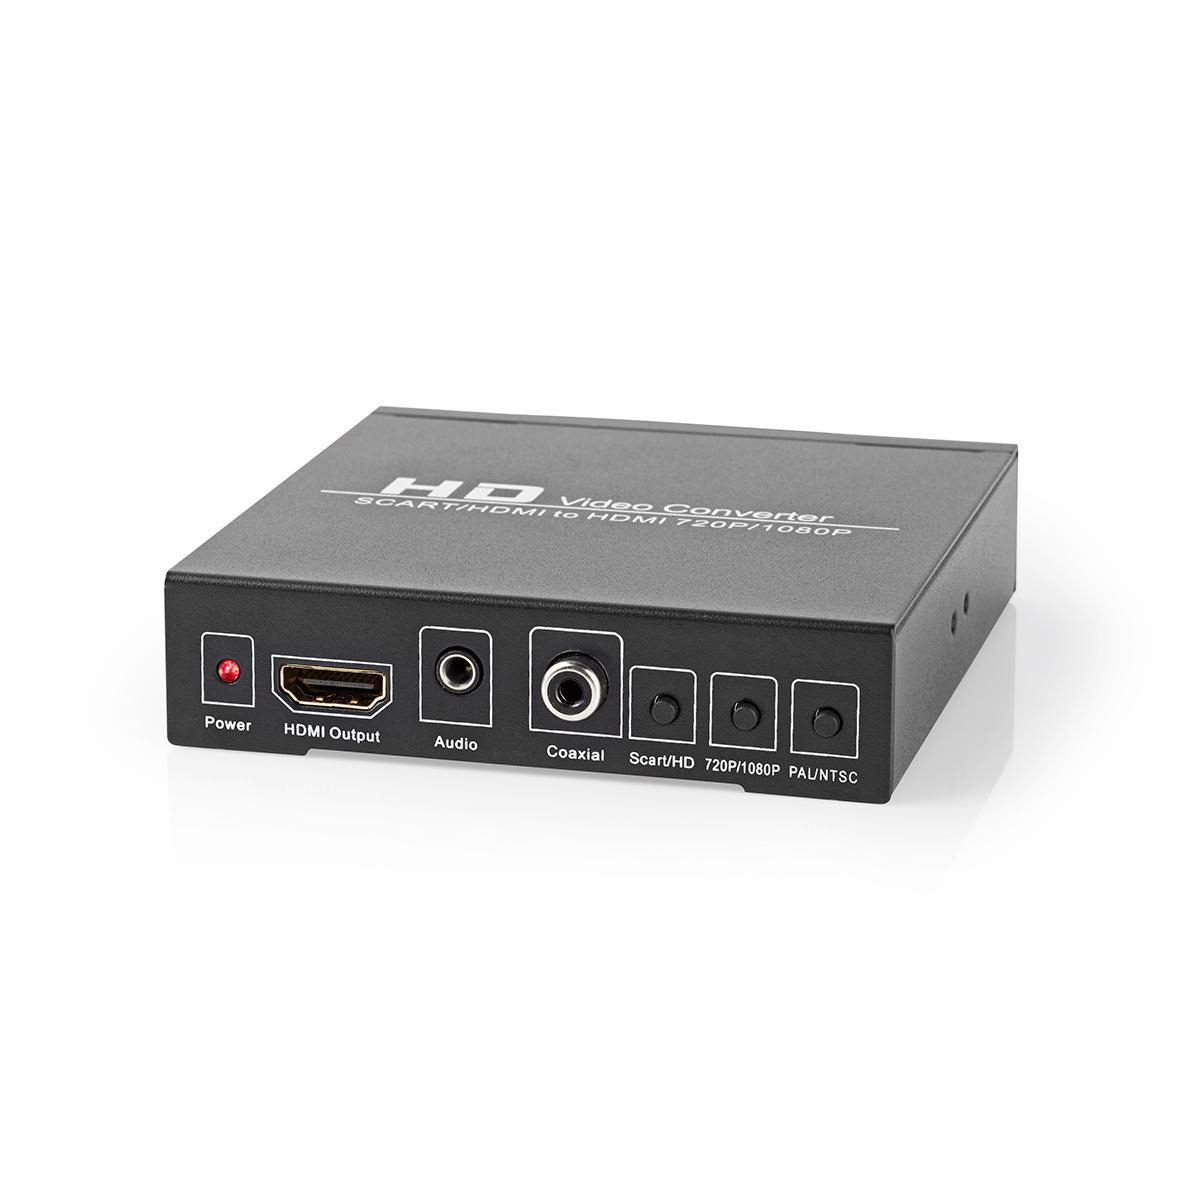 NEDIS VCON3452AT Converter HDMI